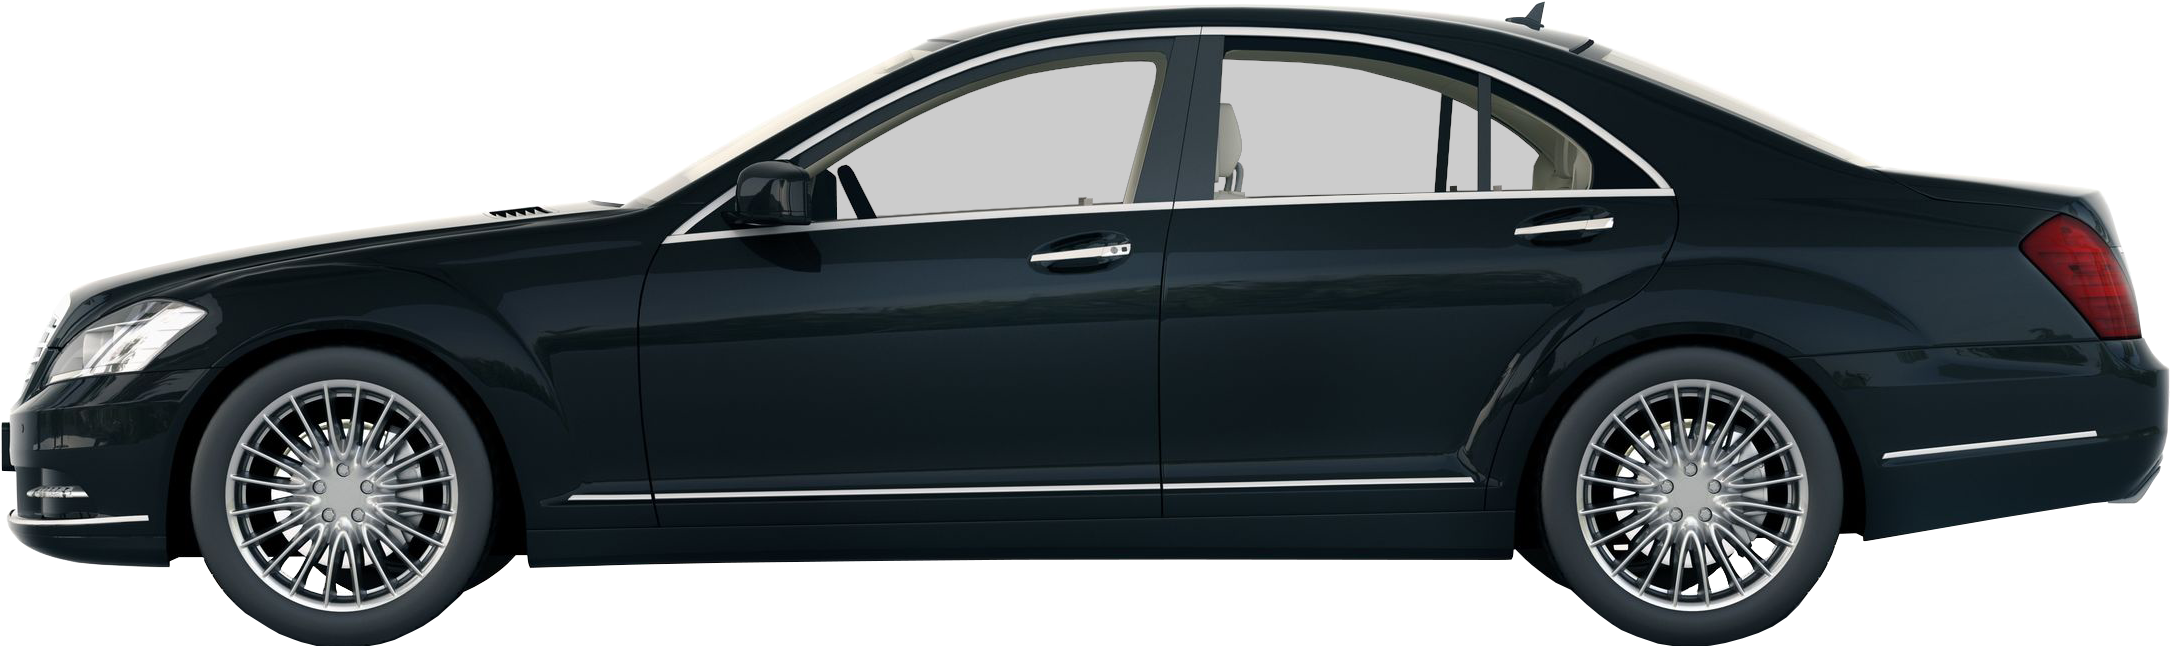 S Class Type Luxury Vehicle - Mazda 4 Door Car 2004 (2246x717), Png Download